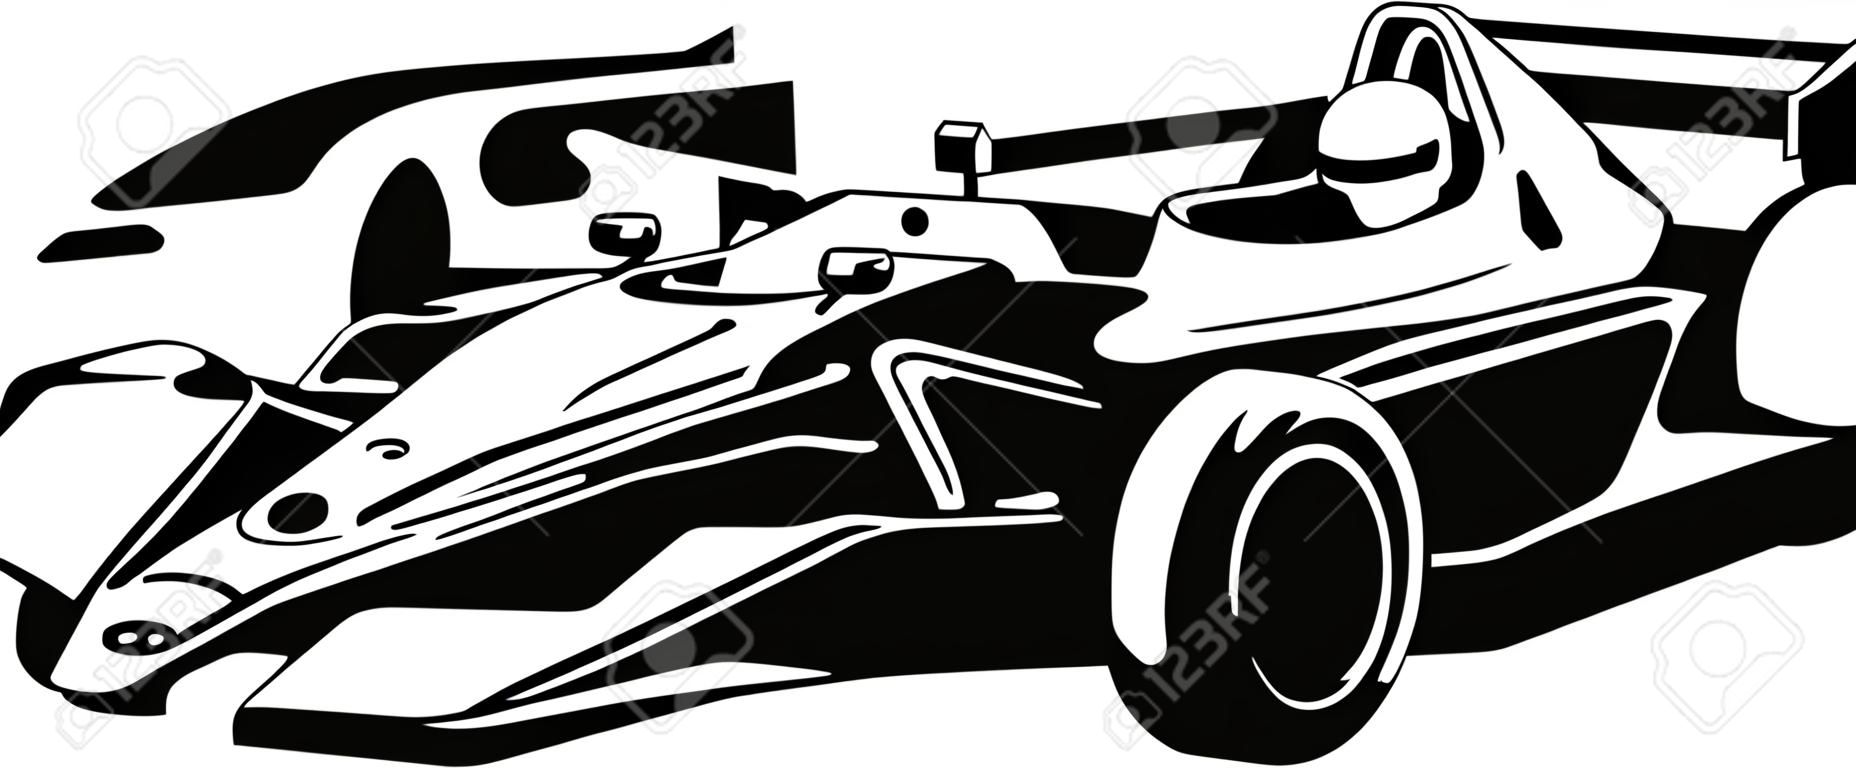 Car Racing - nero come illustrazione vettoriale